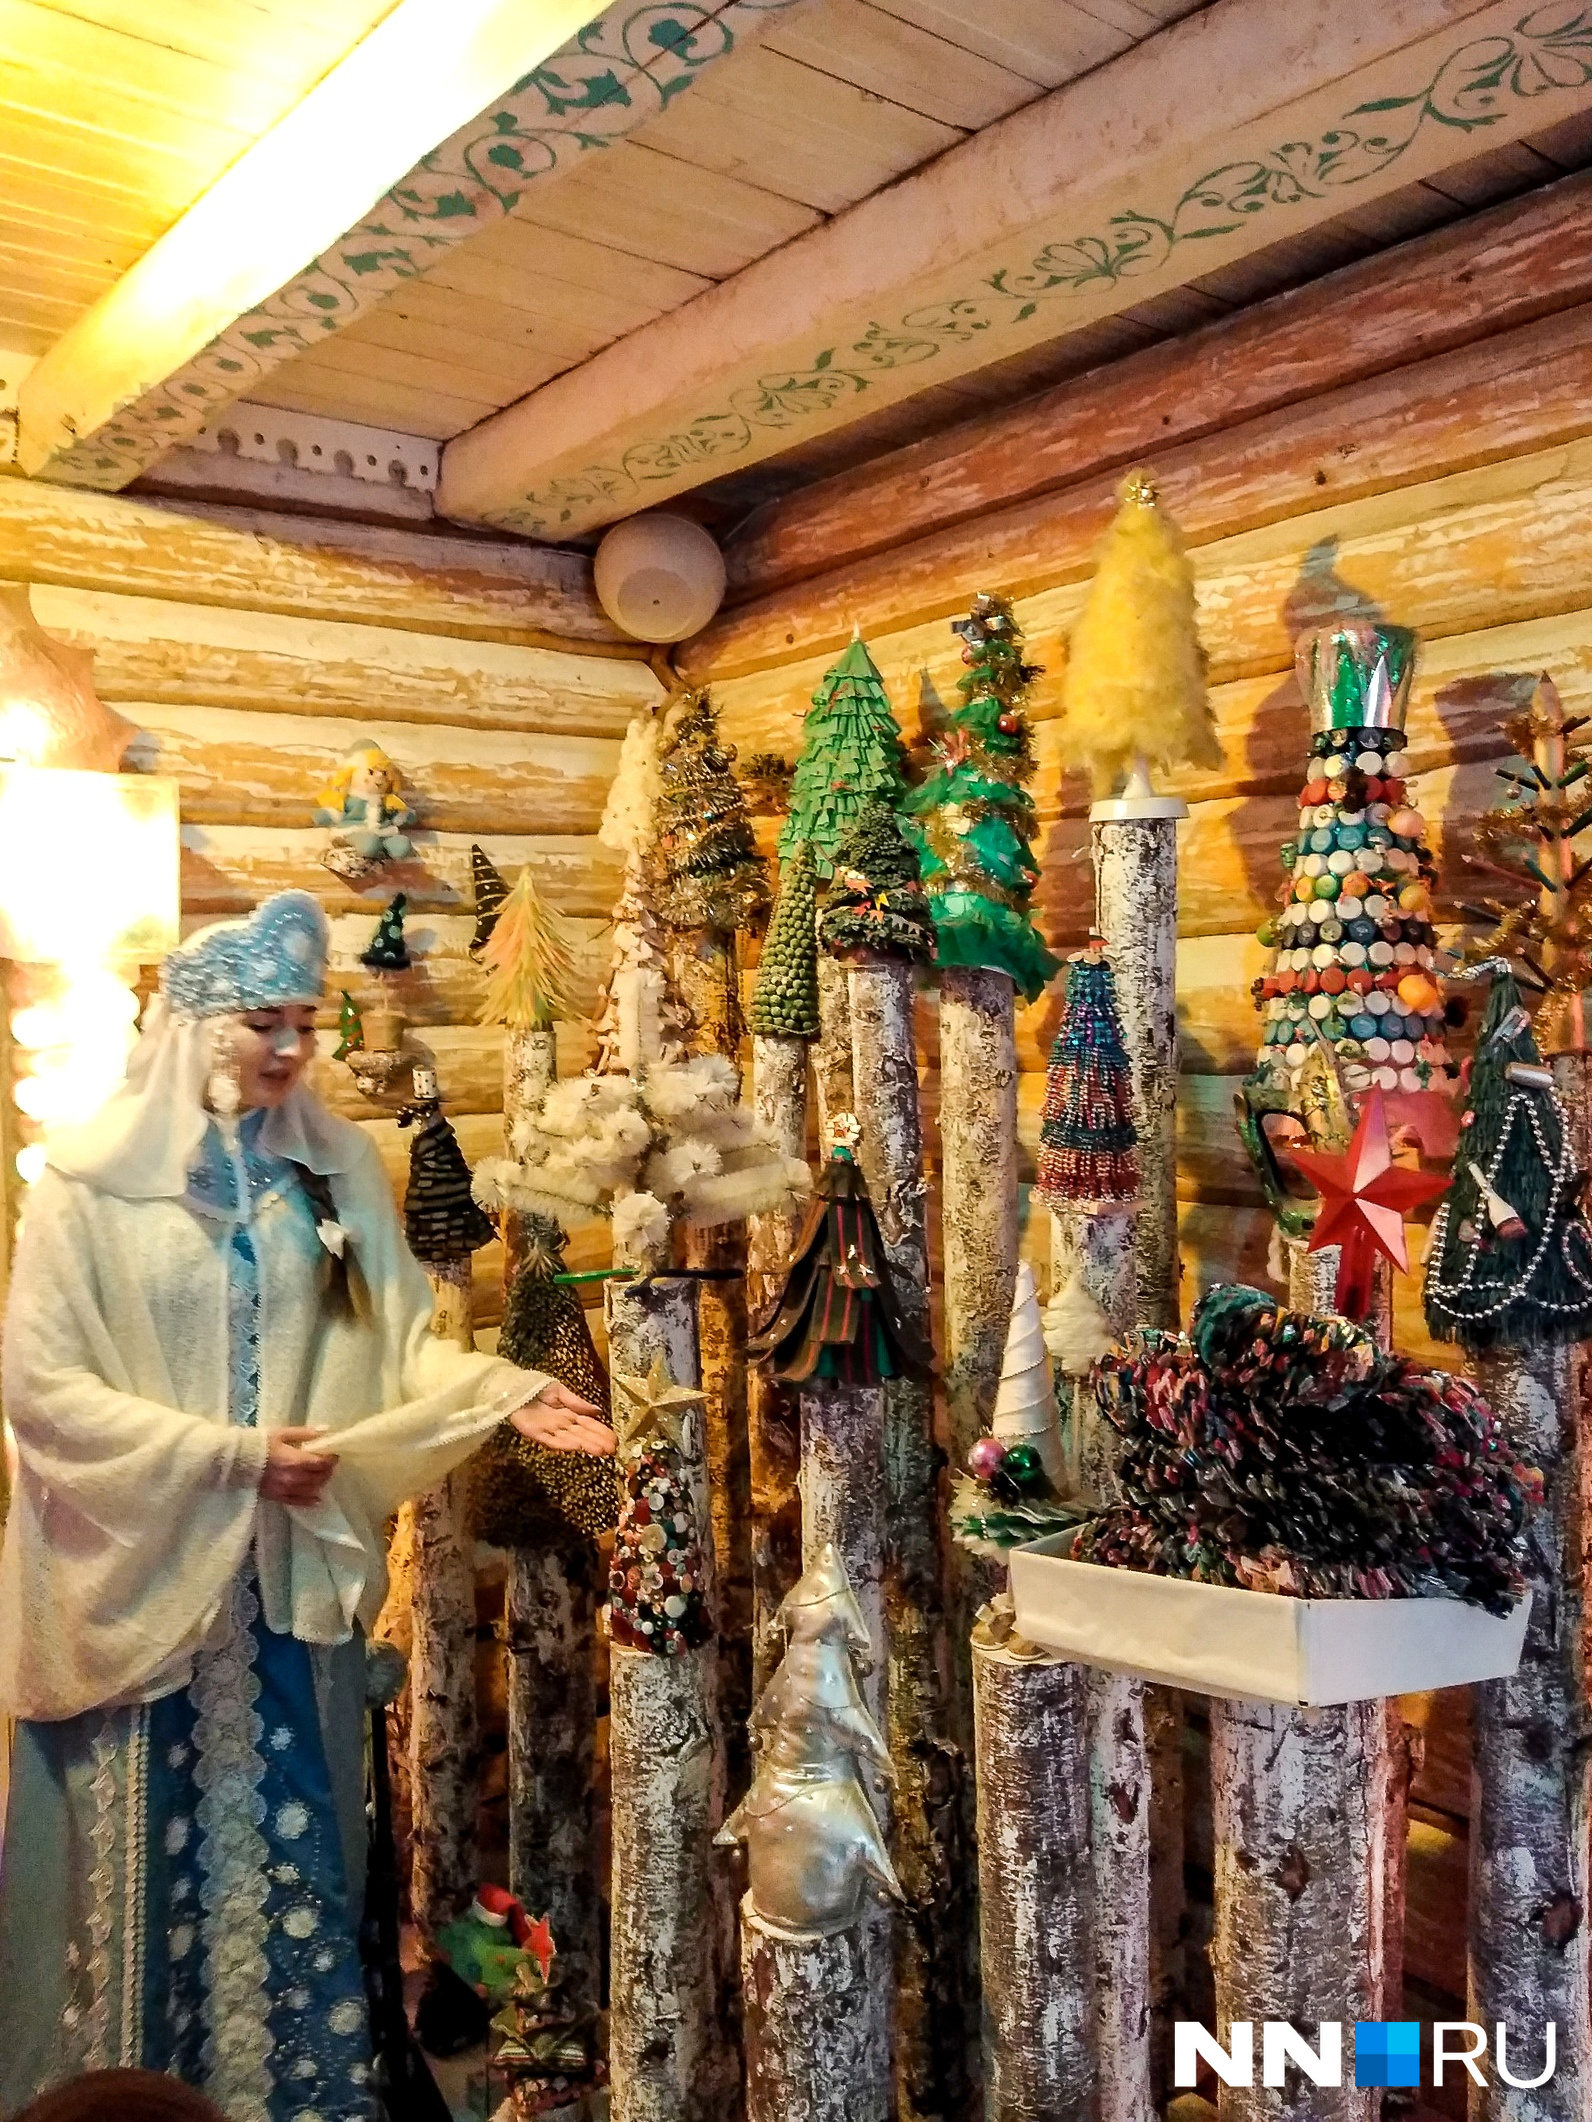 Рукодельные елочки присылают Снегурочке со всей России. Скопилась немаленькая коллекция